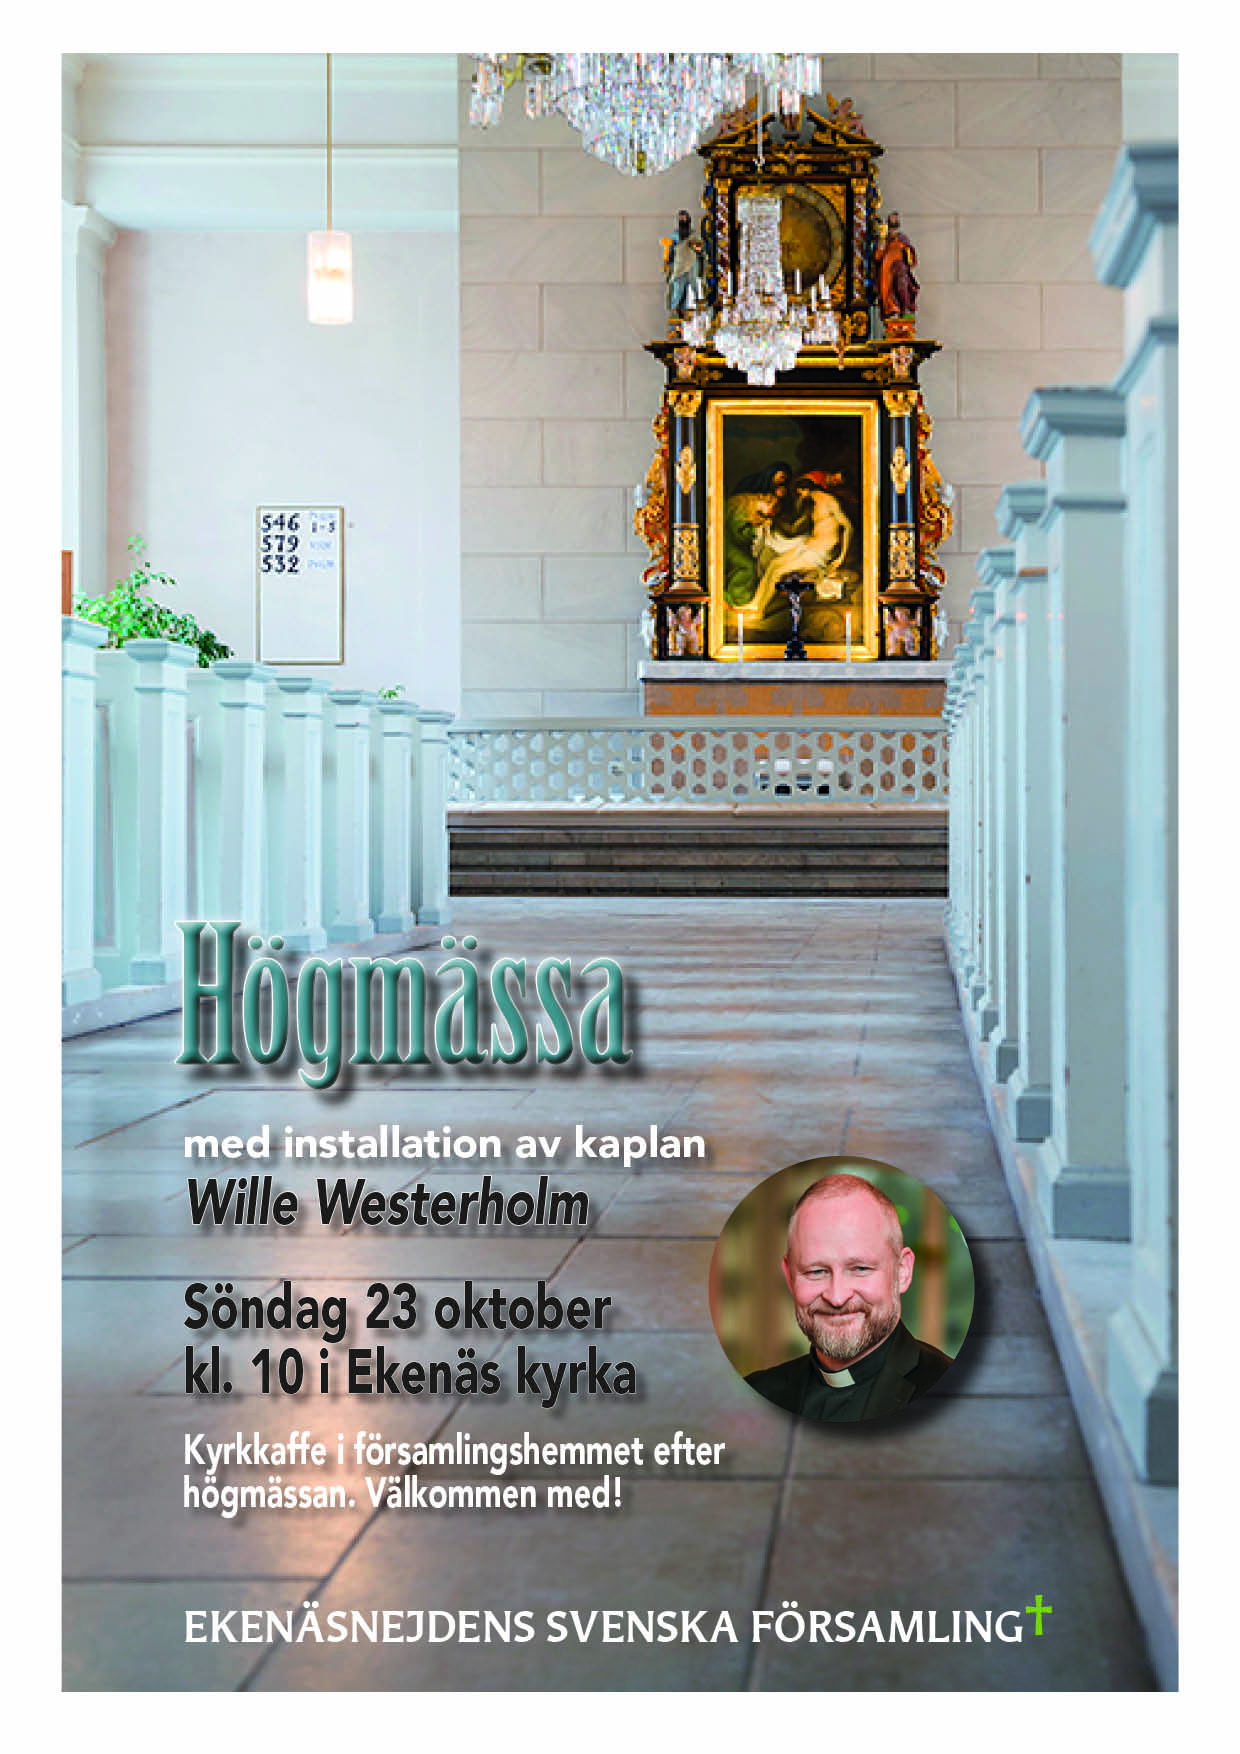 Fondbilden i affischen är huvudgången och altaruppsatsen i Ekenäs kyrka. Den lilla bilden är ett foto på kaplan Wille Westerholm.